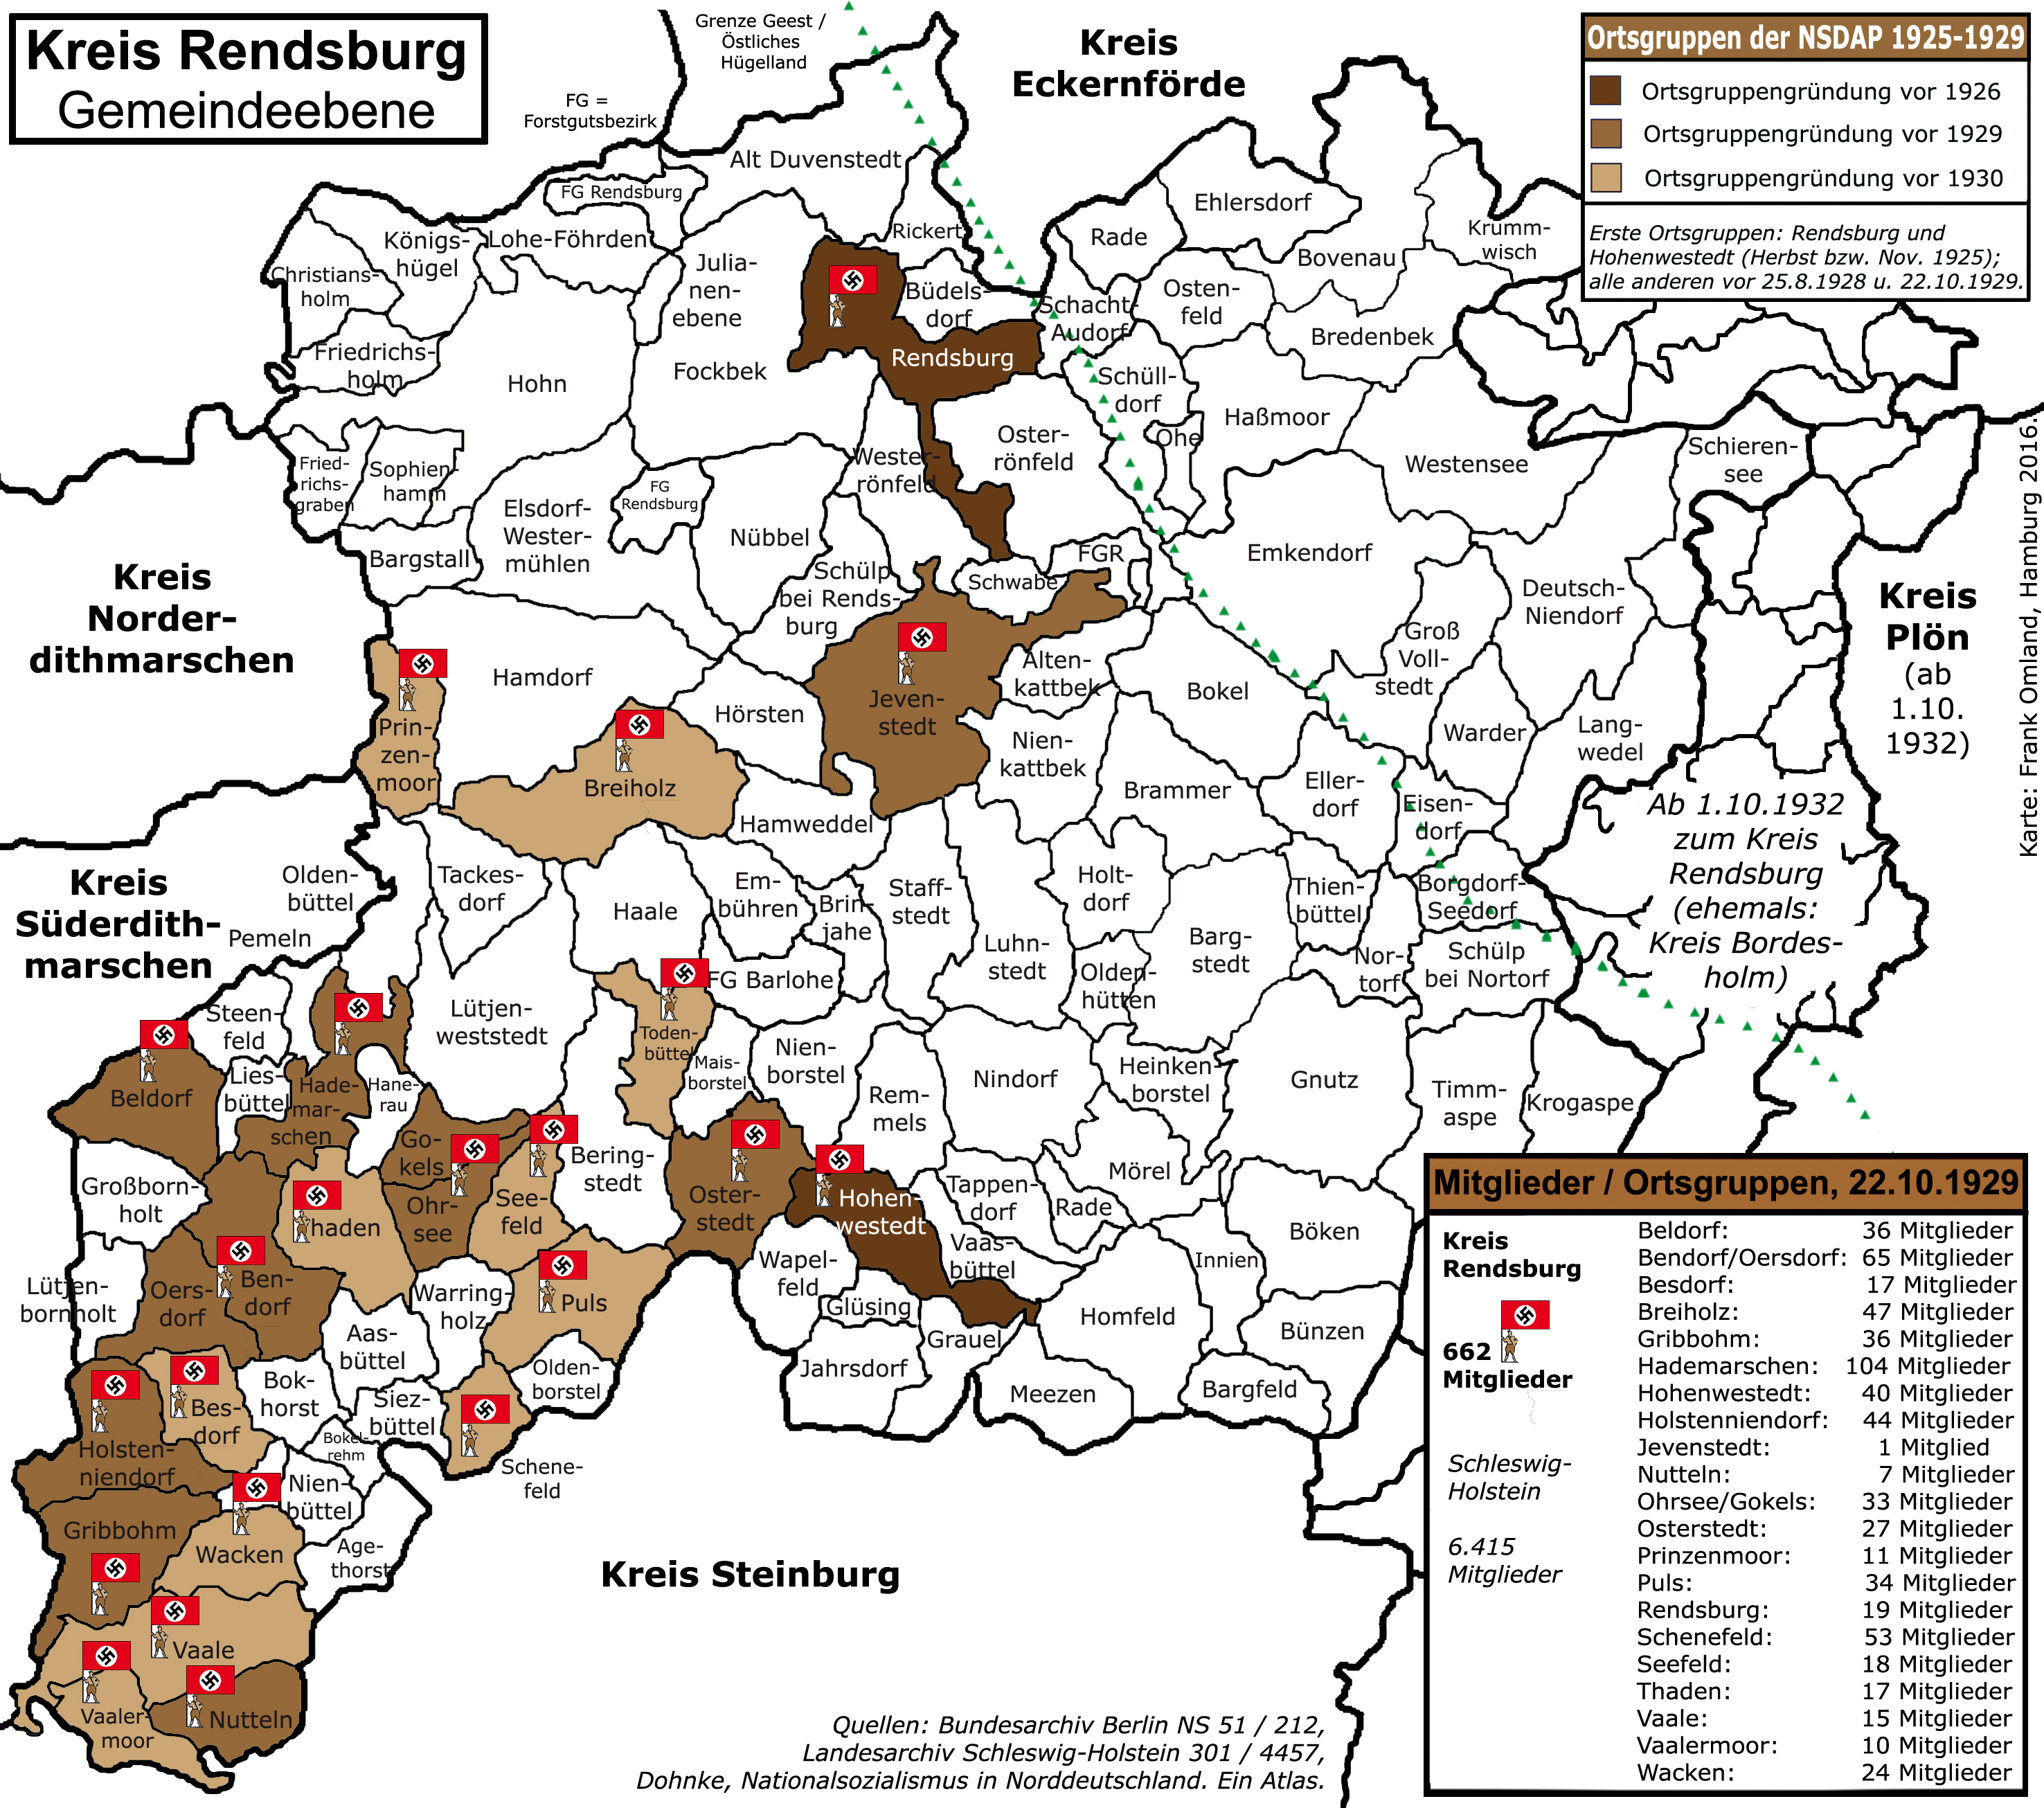 Rendsburg OG NSDAP 1929